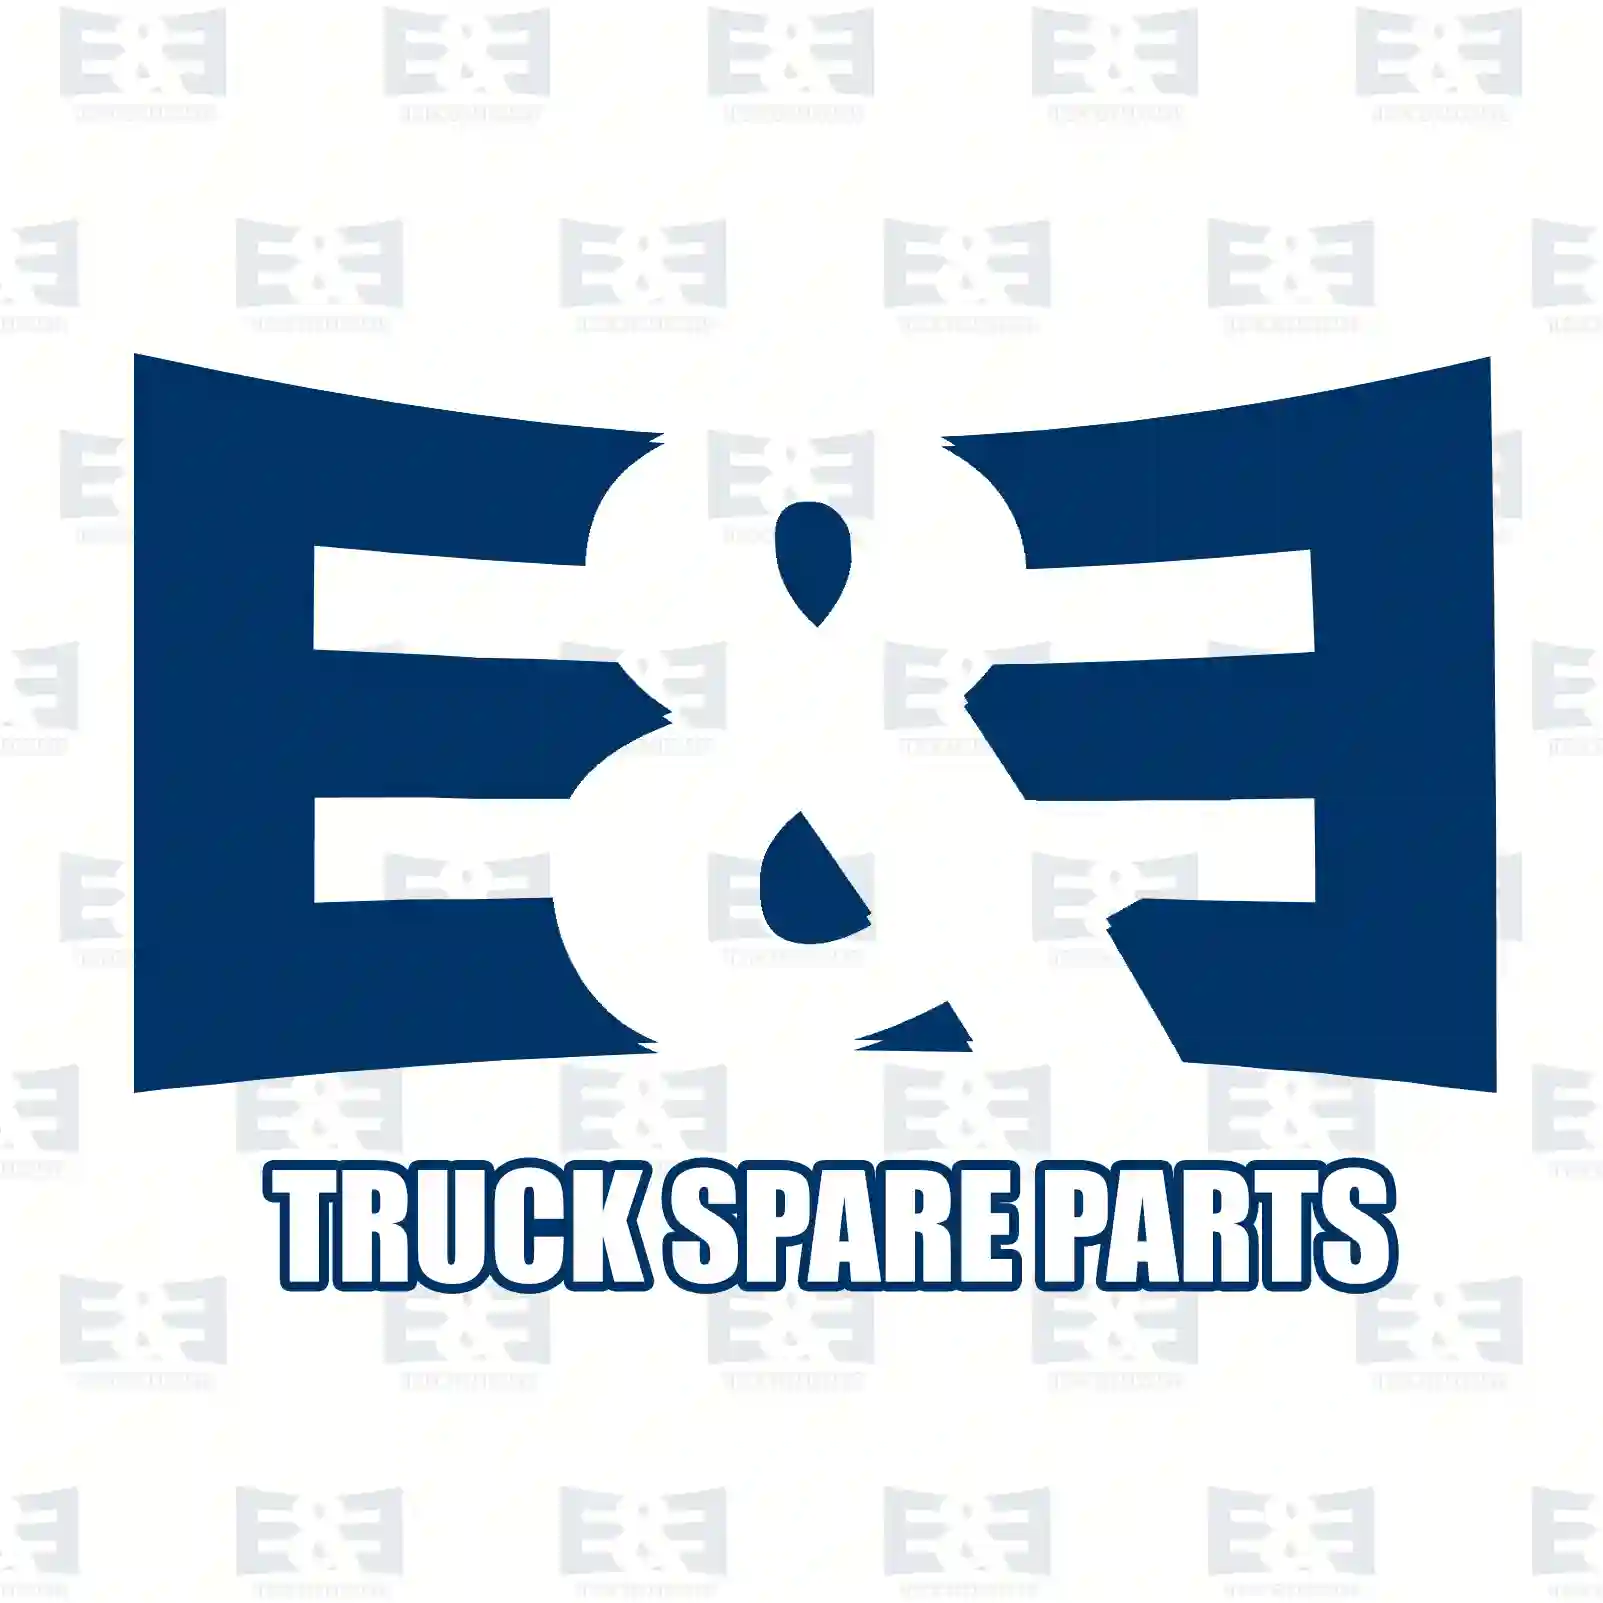 Guide roller, 2E2202560, 9201540, 13077-00QAA, 4506092, 8200004593 ||  2E2202560 E&E Truck Spare Parts | Truck Spare Parts, Auotomotive Spare Parts Guide roller, 2E2202560, 9201540, 13077-00QAA, 4506092, 8200004593 ||  2E2202560 E&E Truck Spare Parts | Truck Spare Parts, Auotomotive Spare Parts